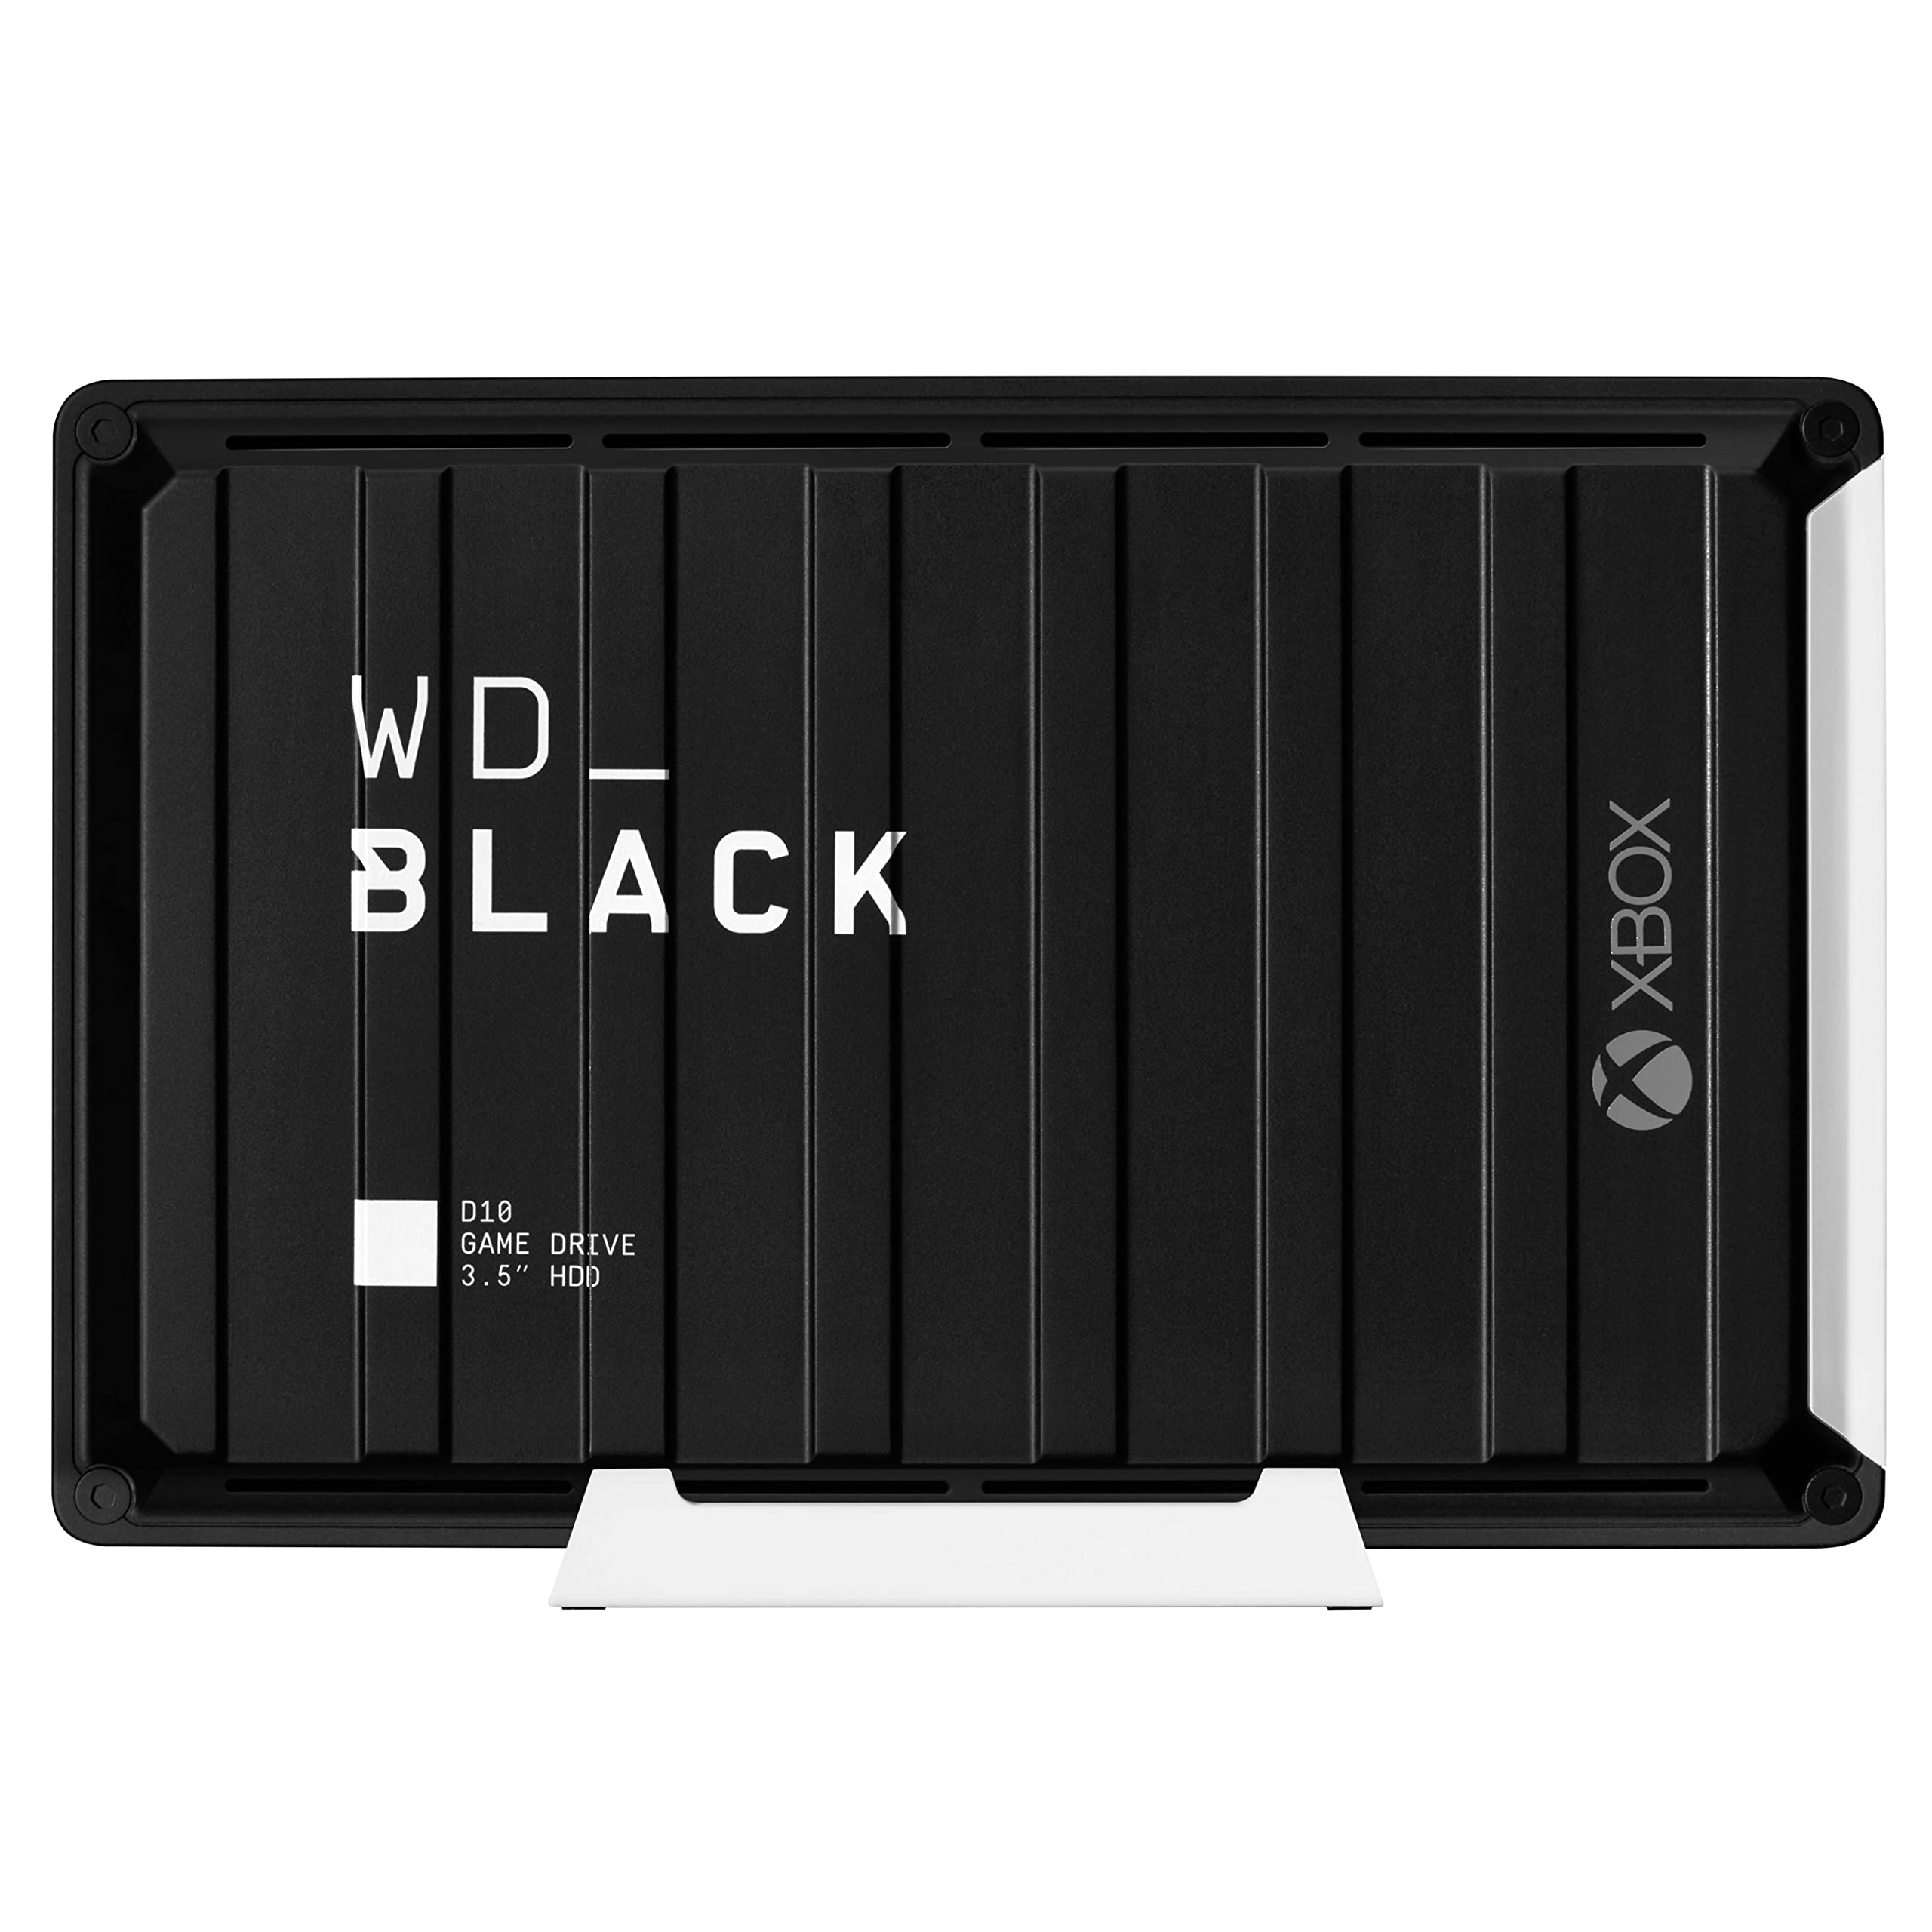 WD_BLACK D10 Game Drive for Xbox externe Festplatte 12 TB (Übertragungsgeschwindigkeit bis zu 250 MB/s, 1 Monat Xbox Game Pass Ultimate, 7200 U/min und aktive Kühlung) Schwarz